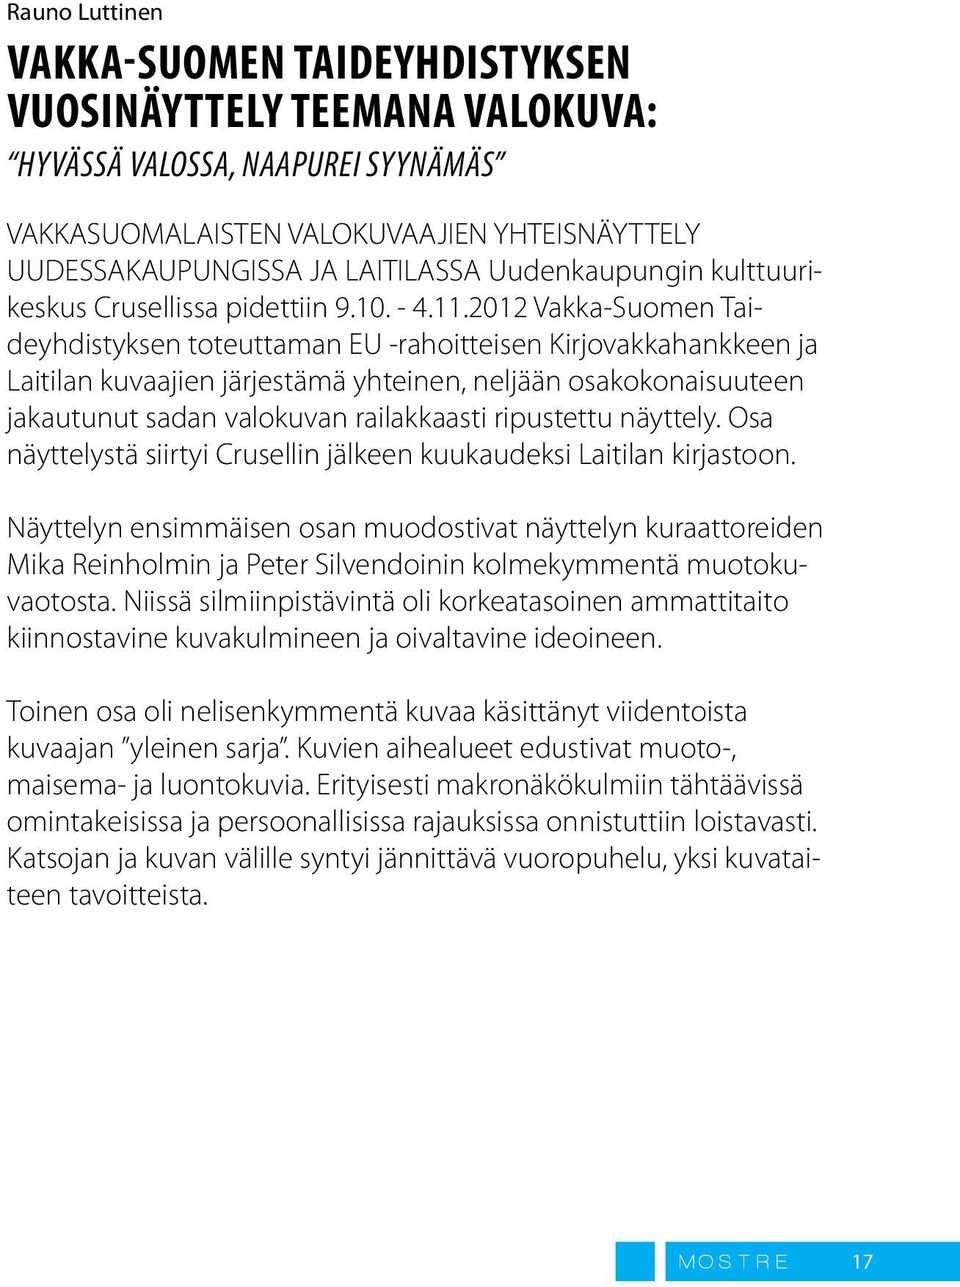 2012 Vakka-Suomen Taideyhdistyksen toteuttaman EU -rahoitteisen Kirjovakkahankkeen ja Laitilan kuvaajien järjestämä yhteinen, neljään osakokonaisuuteen jakautunut sadan valokuvan railakkaasti